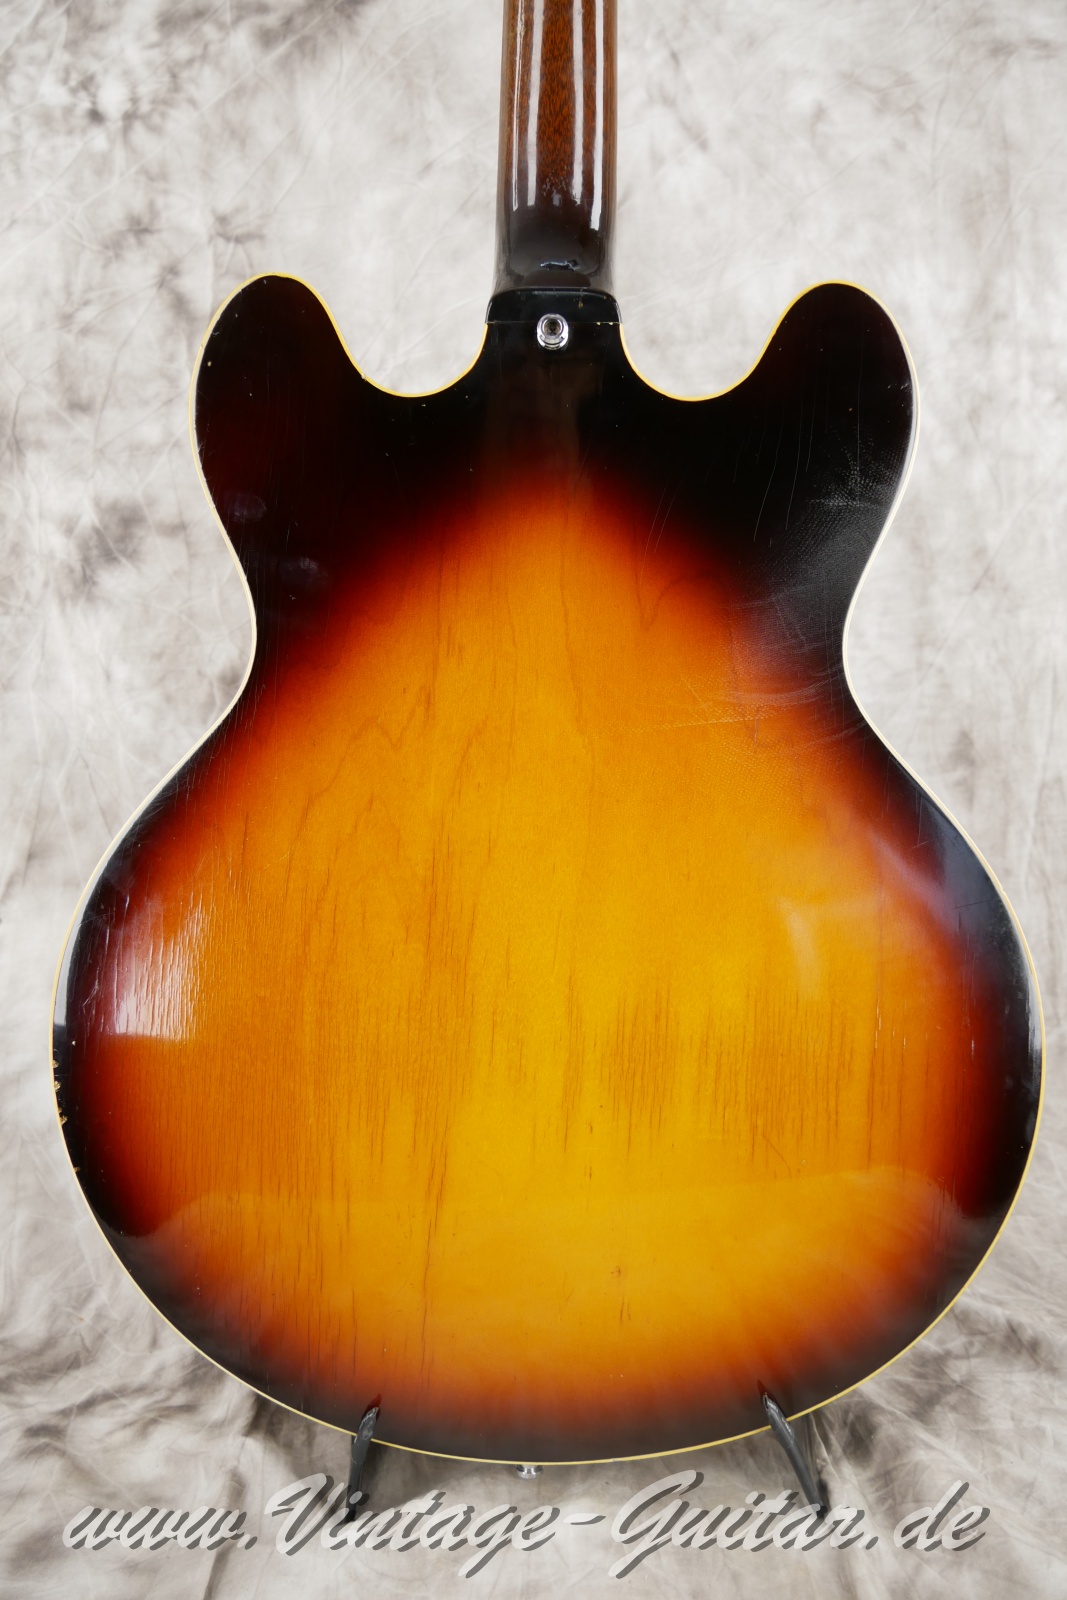 Gibson-ES-335TD-sunburst-1967-004.JPG